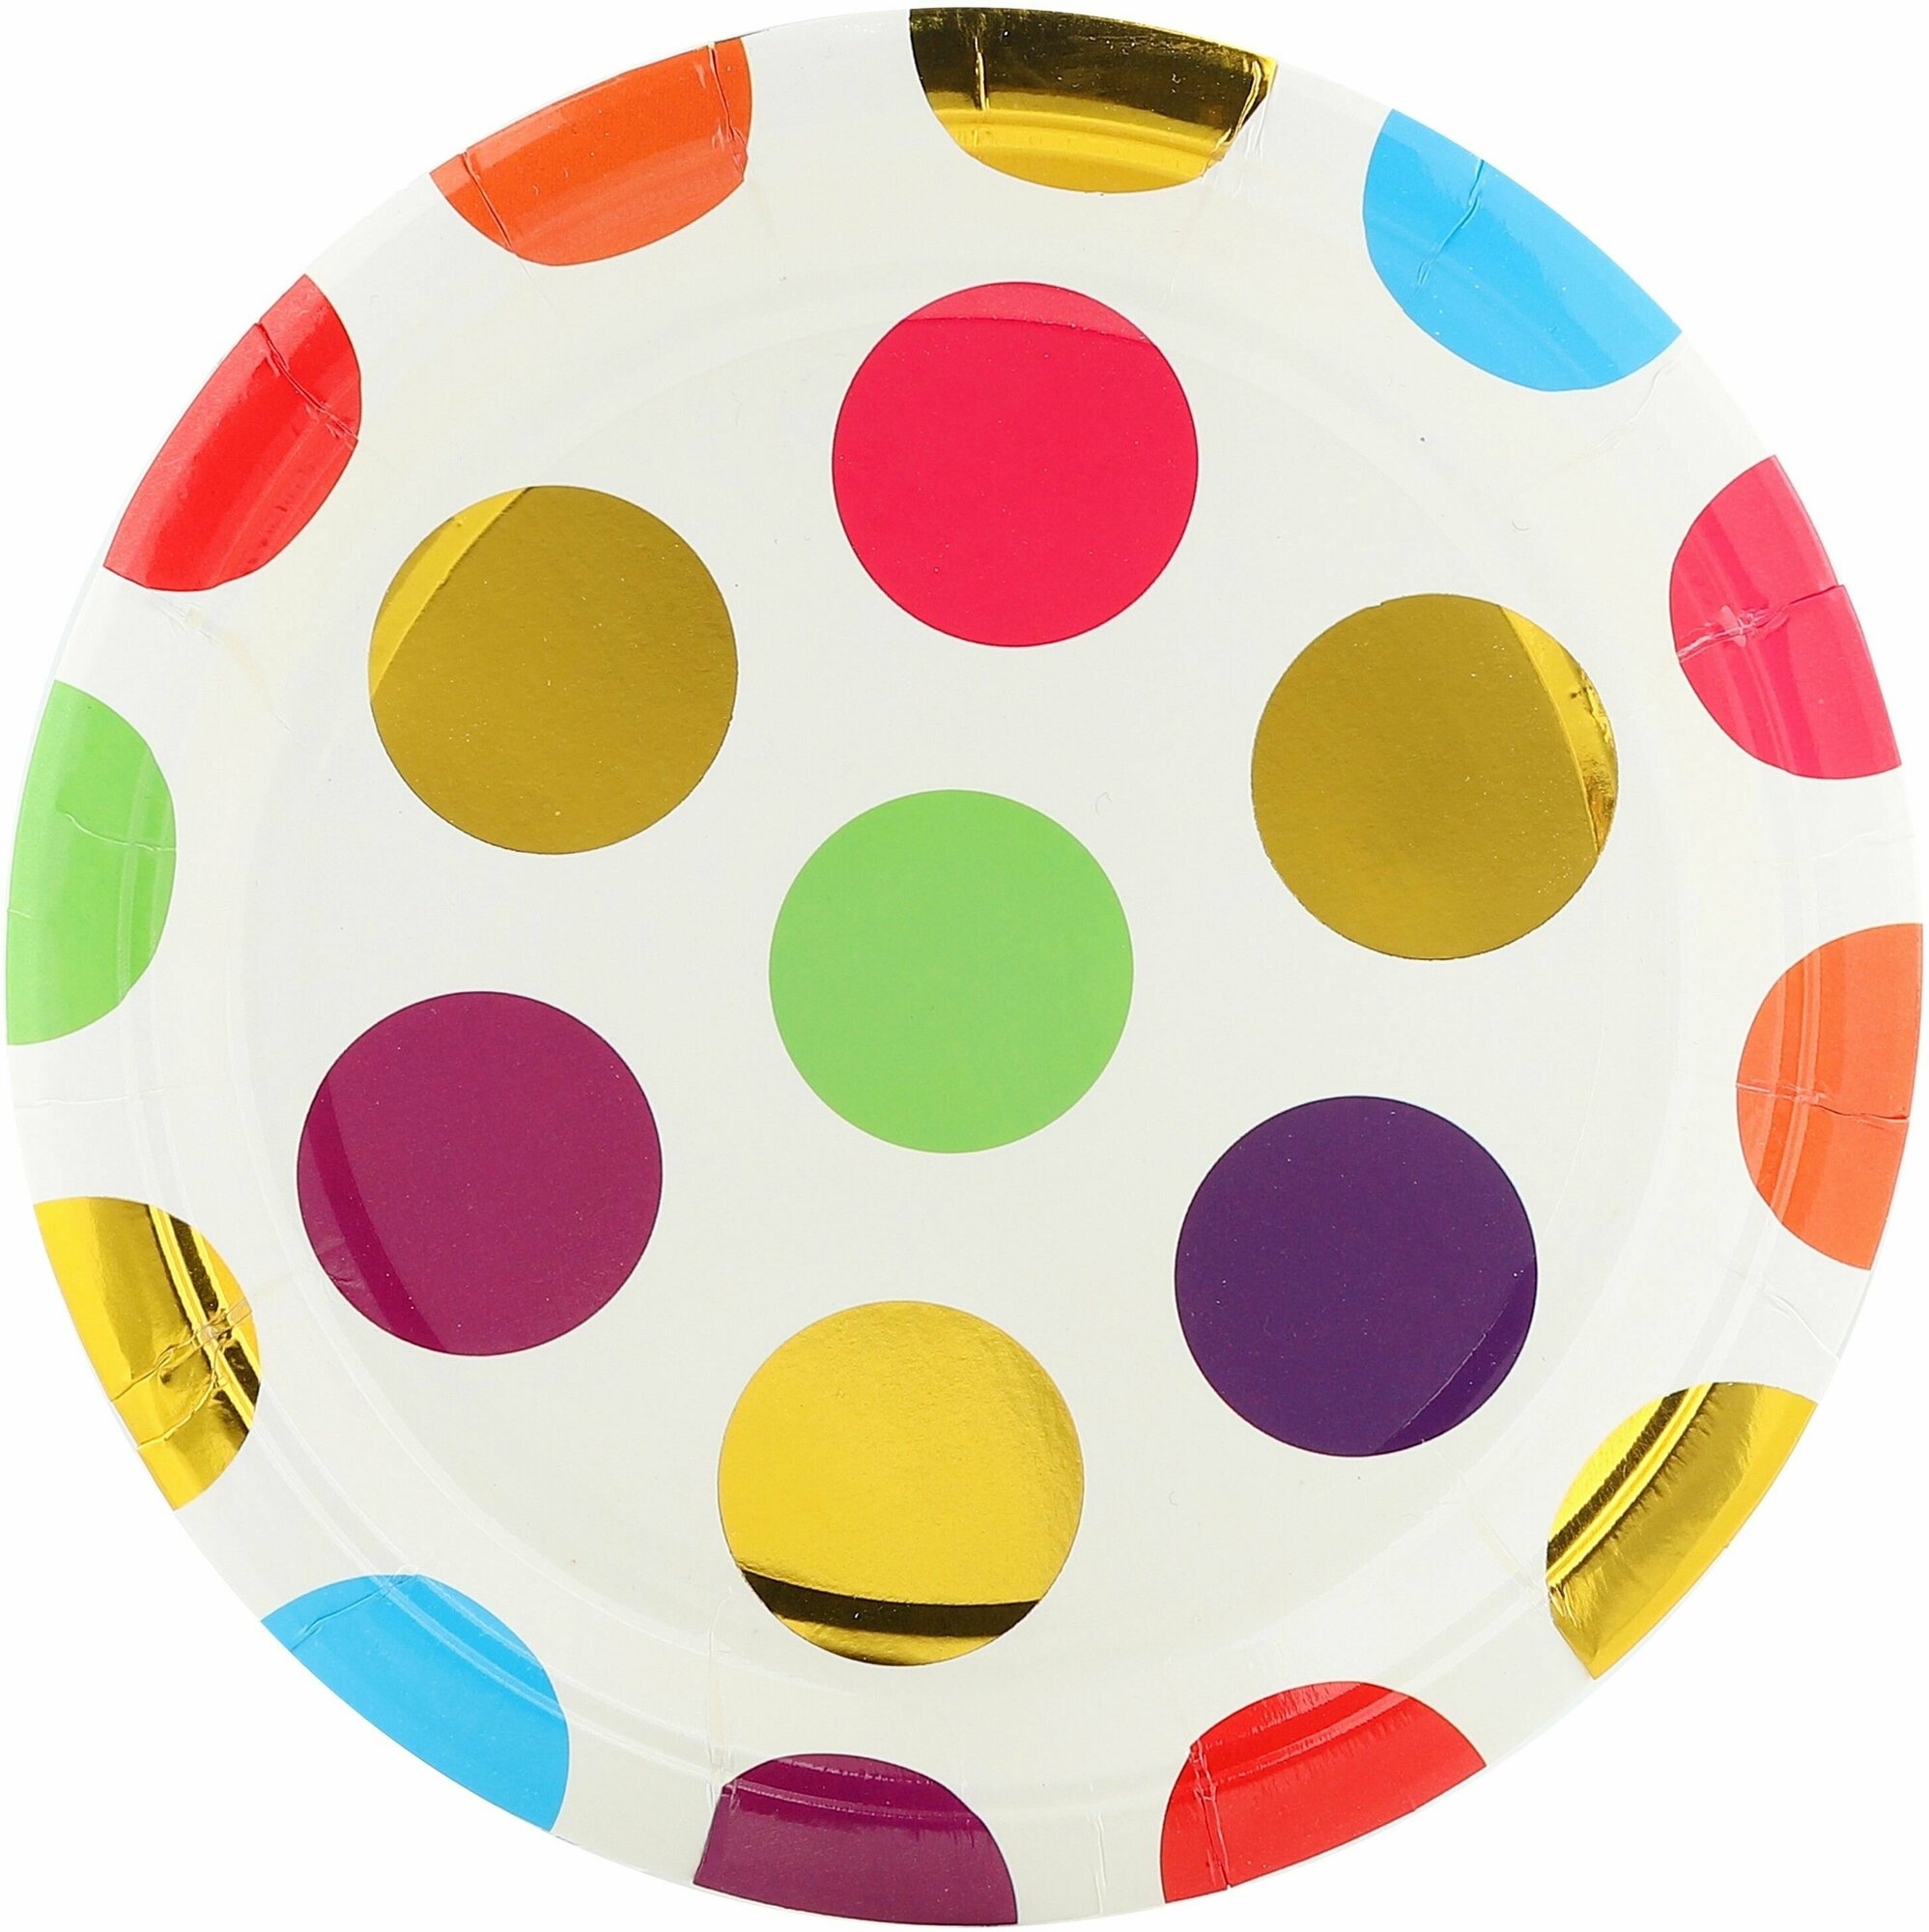 Тарелки одноразовые бумажные/Набор одноразовых бумажных тарелок для праздника (7'/18 см) Красочный Горошек, Разноцветный, Металлик, 6 шт.